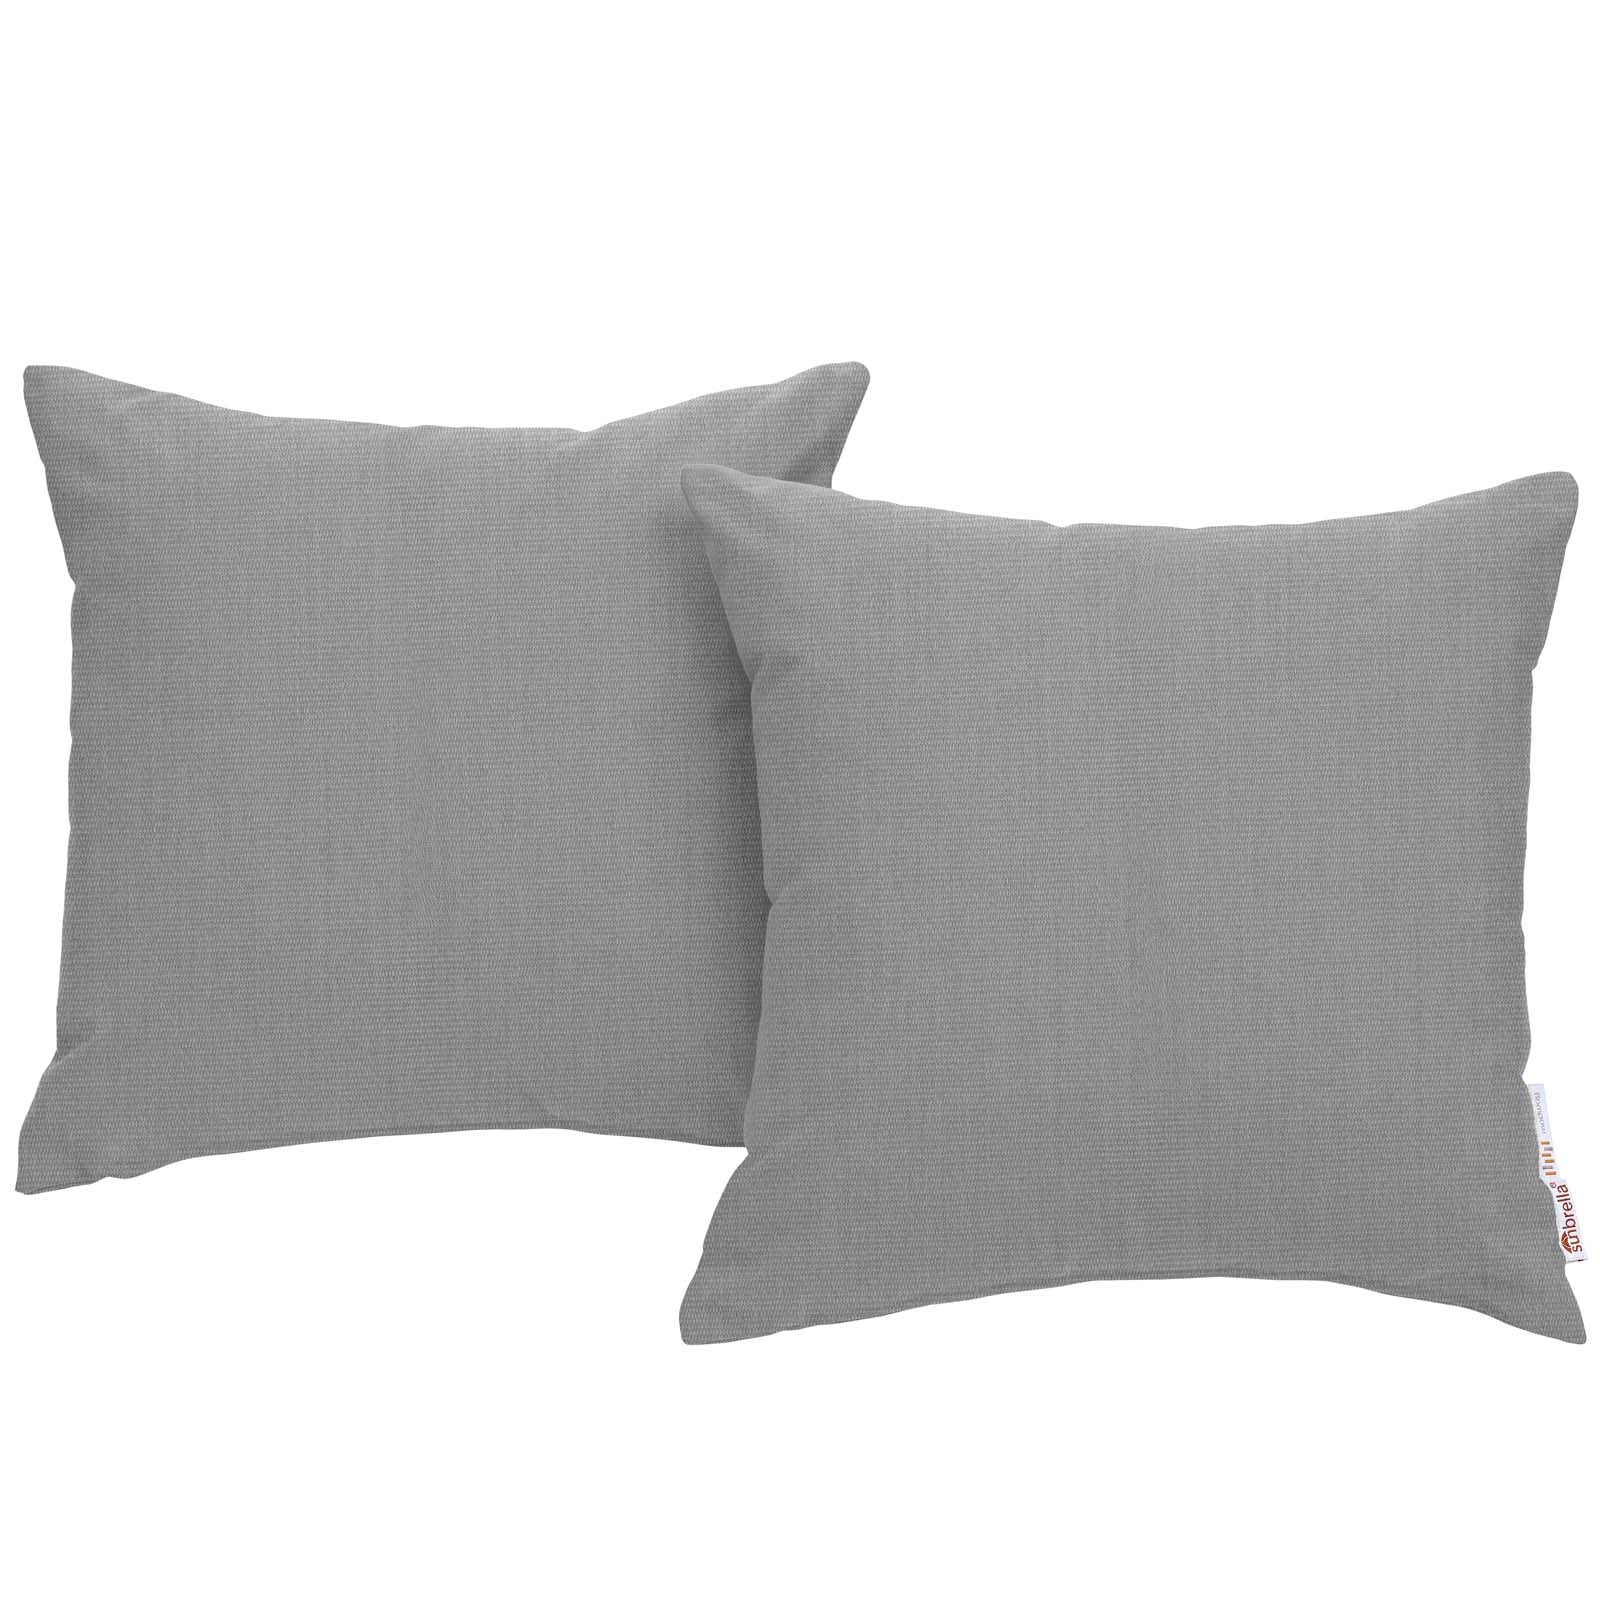 Modway Outdoor Pillows & Cushions - Summon 2 Piece Outdoor Patio Sunbrella Pillow Set Gray